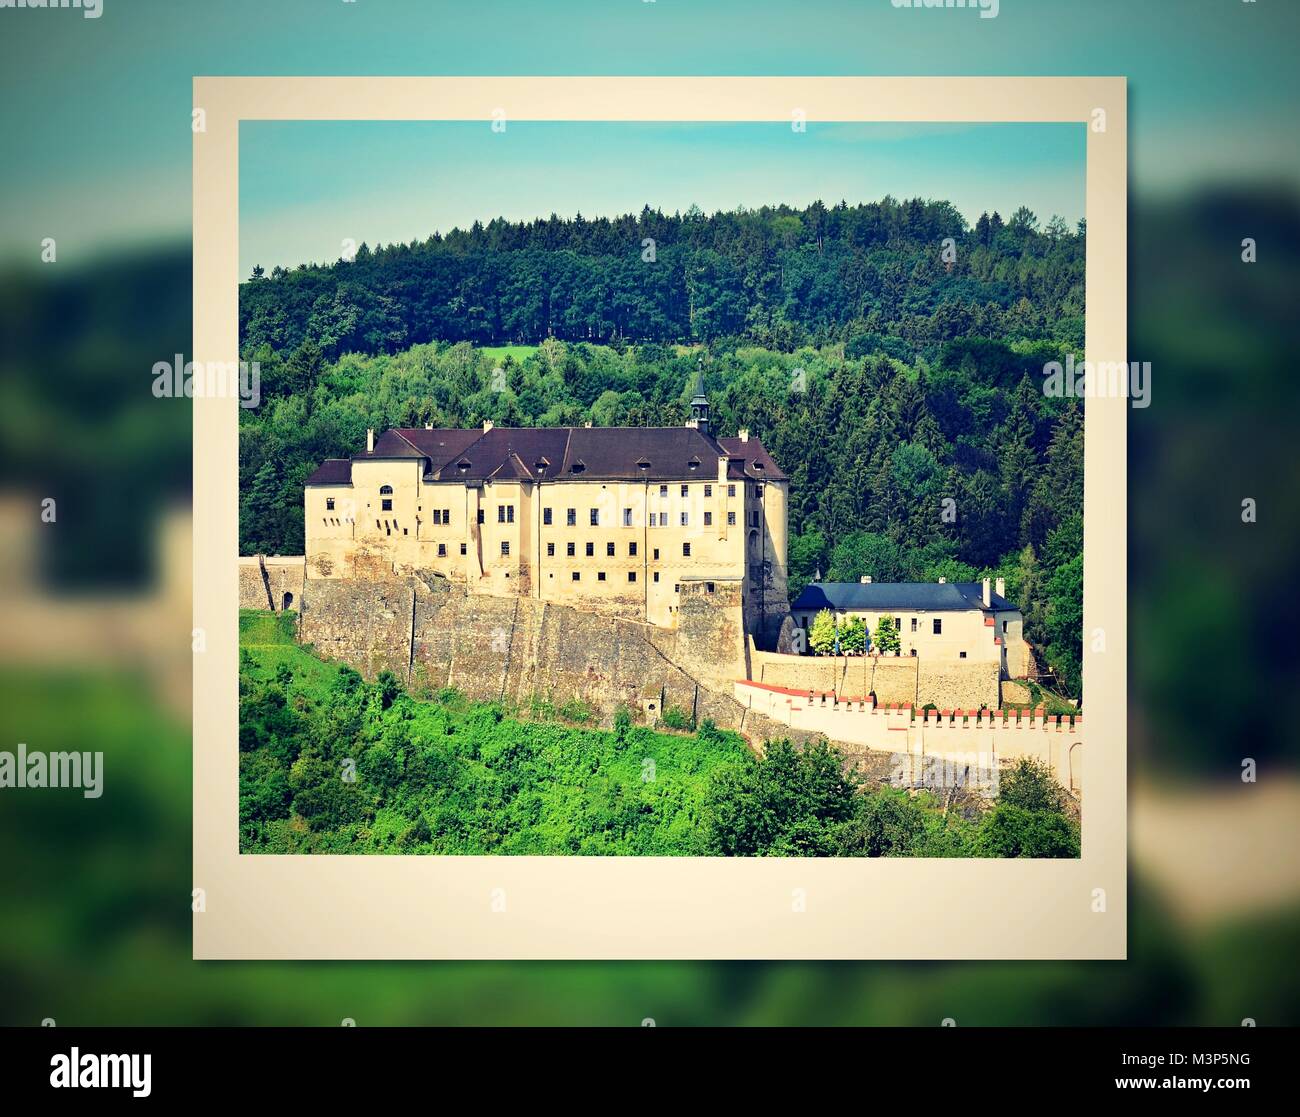 Marco de fotos instantánea con vistas a un castillo. Foto de stock